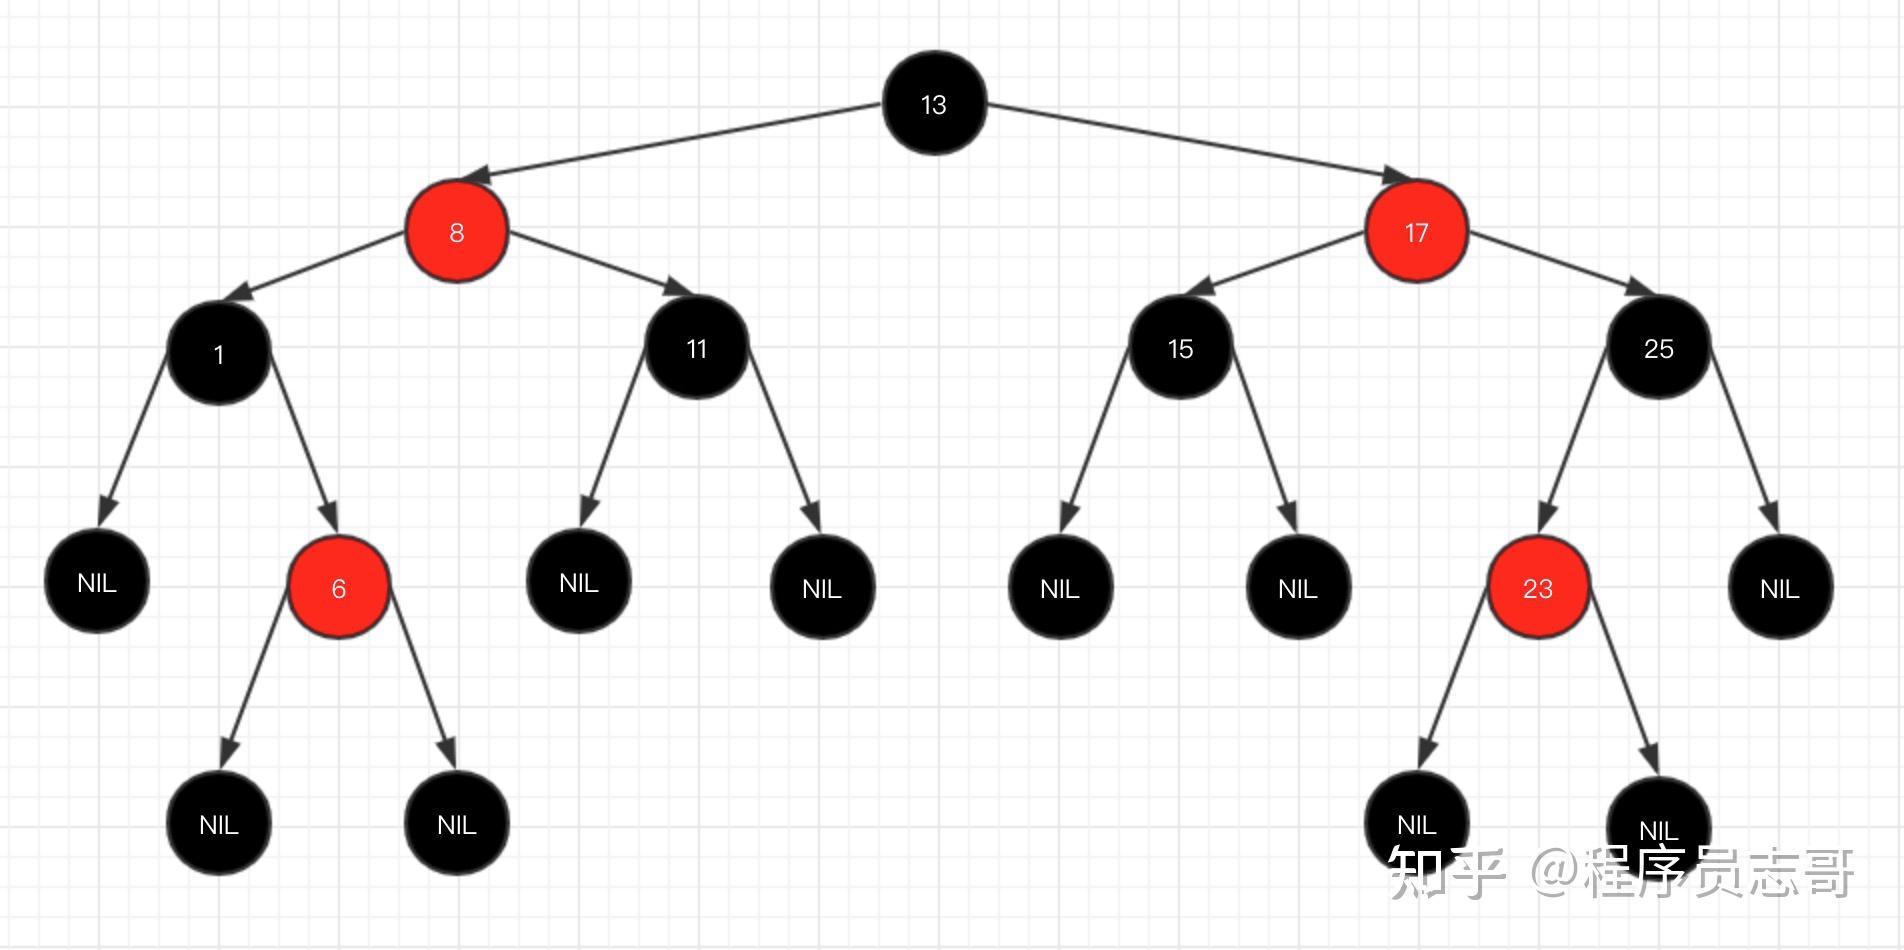 分析二叉排序树查找性能的最好情况和最坏情况_二叉排序树什么情况下查找效率最低